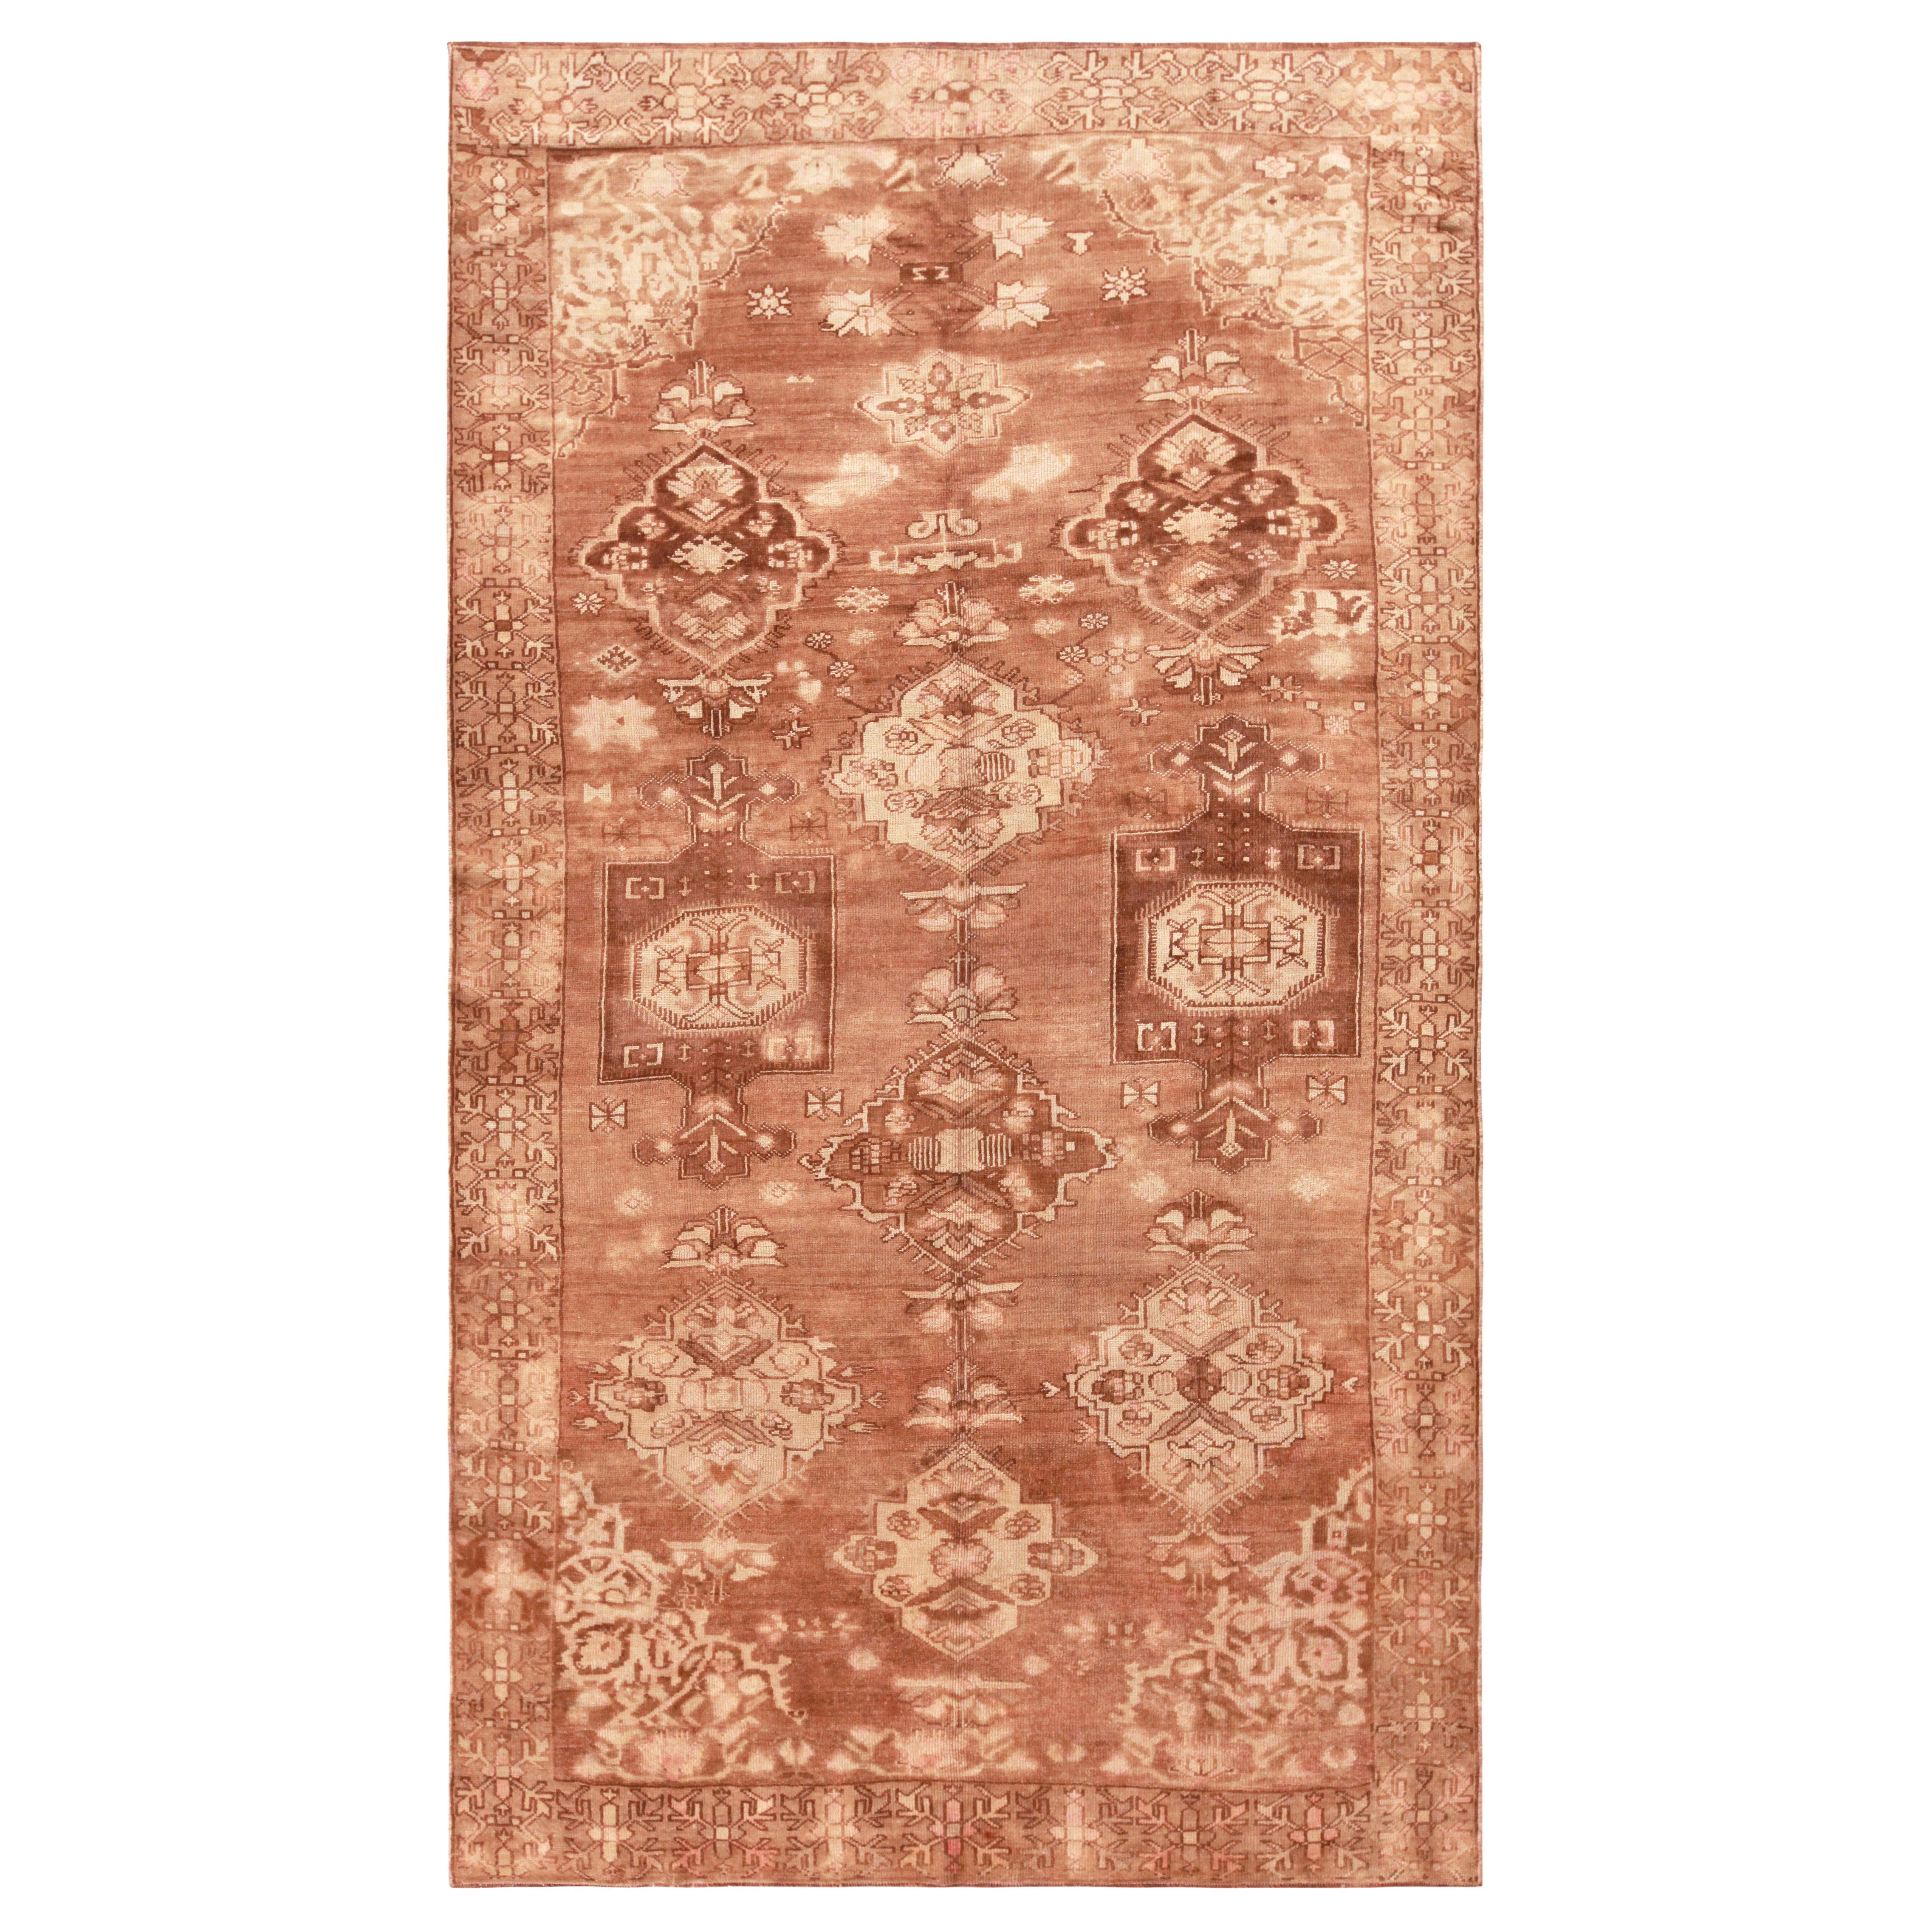 Kars-Teppich aus der Türkei. Größe: 6 Fuß 8 Zoll x 11 Fuß 3 Zoll